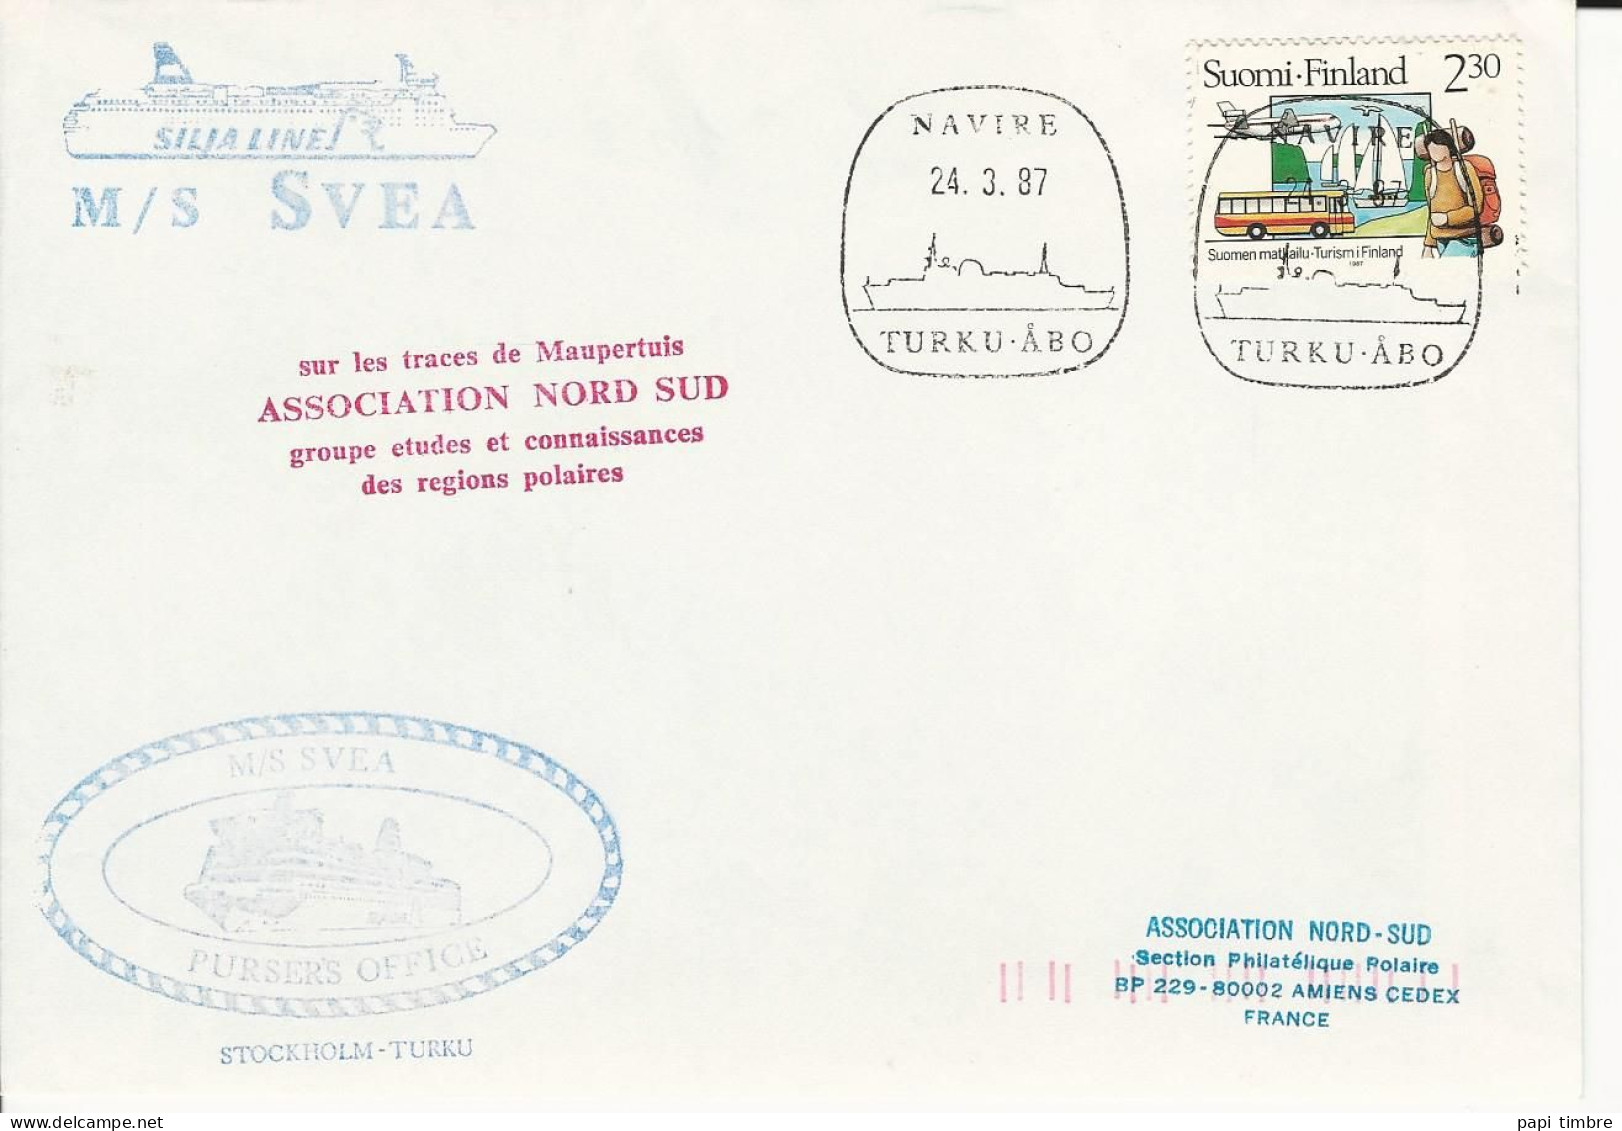 FINLANDE - Association Nord-Sud - M/S SVEA - Navire TURKU-ÂBO - 1987 - Programas De Investigación